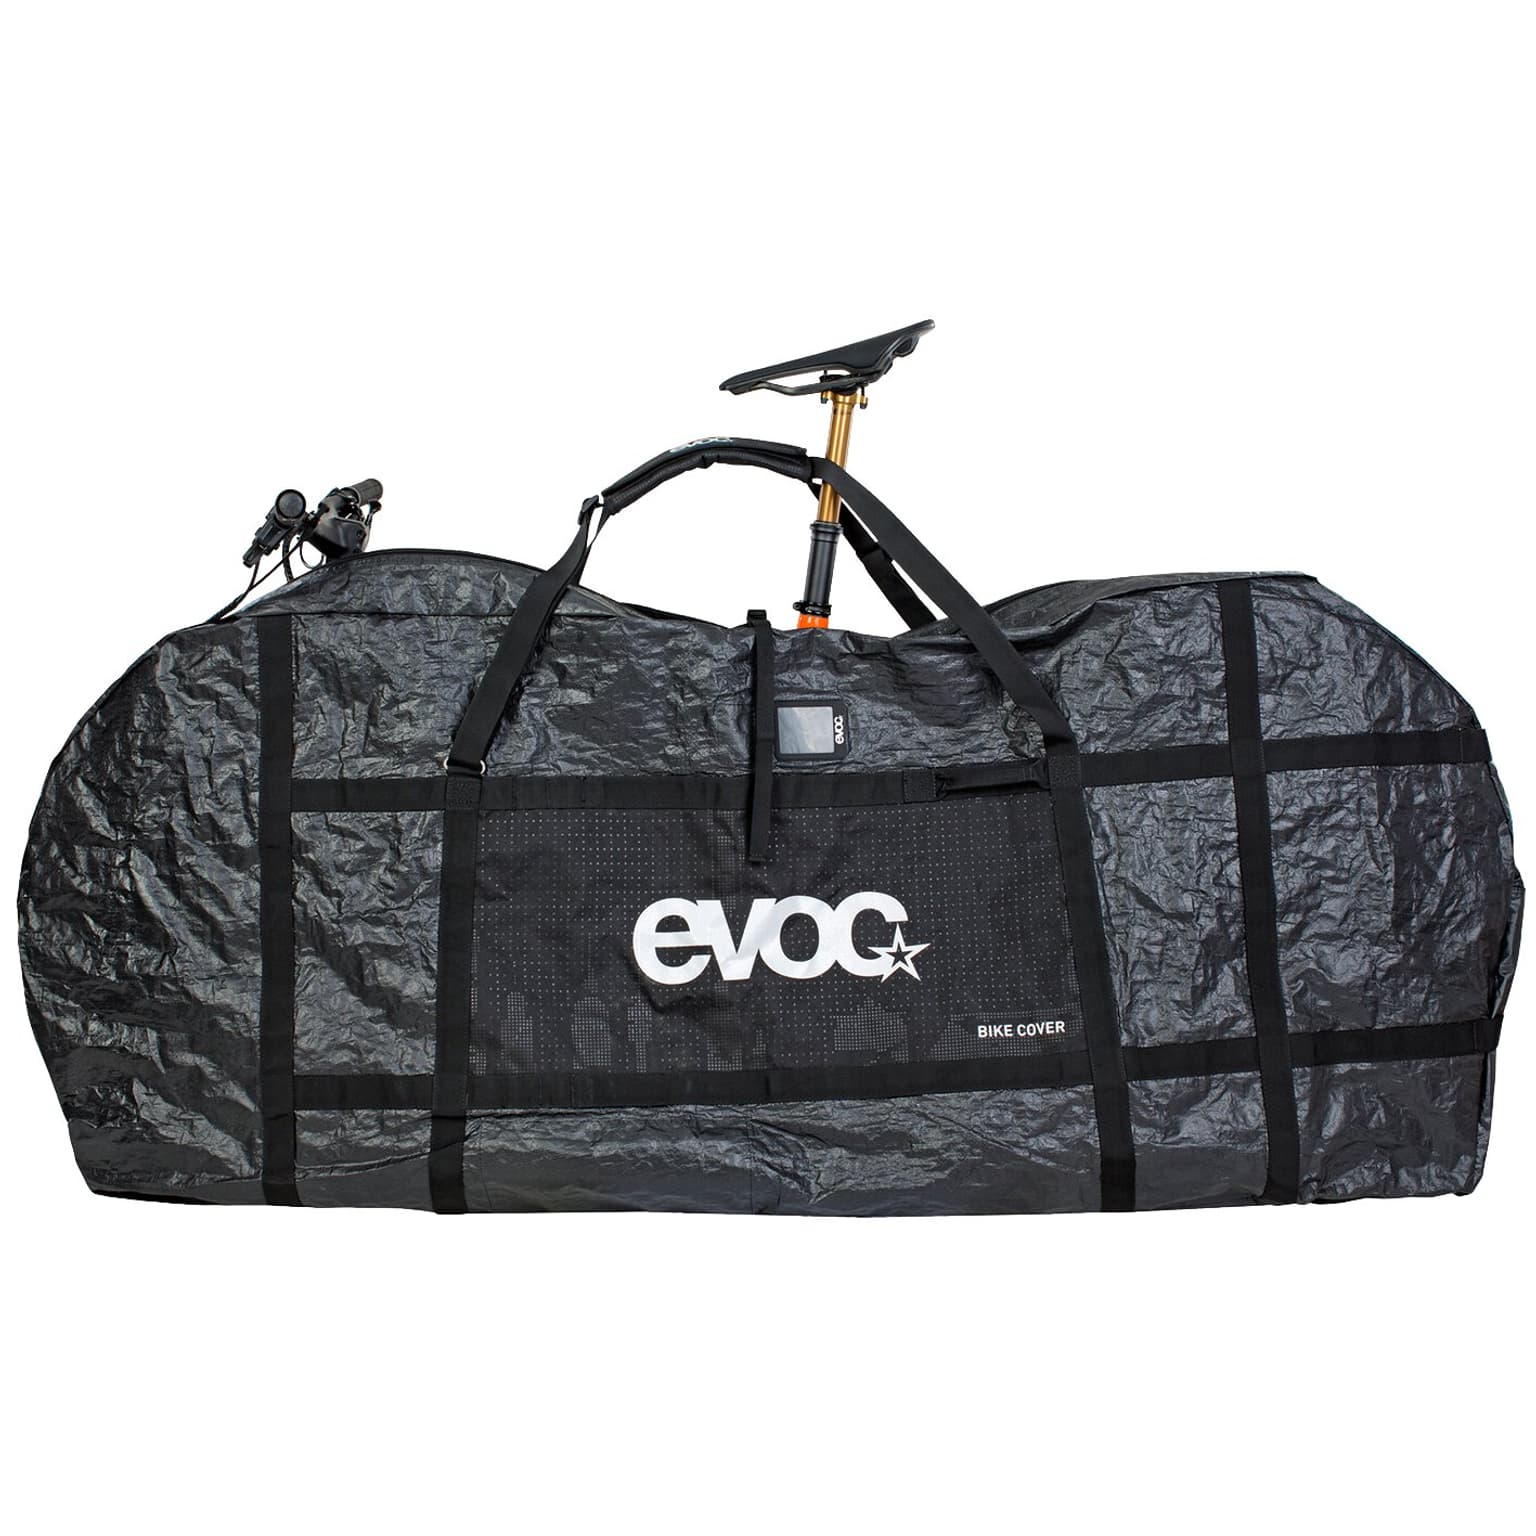 Evoc Evoc Bike Cover Transporttasche 2